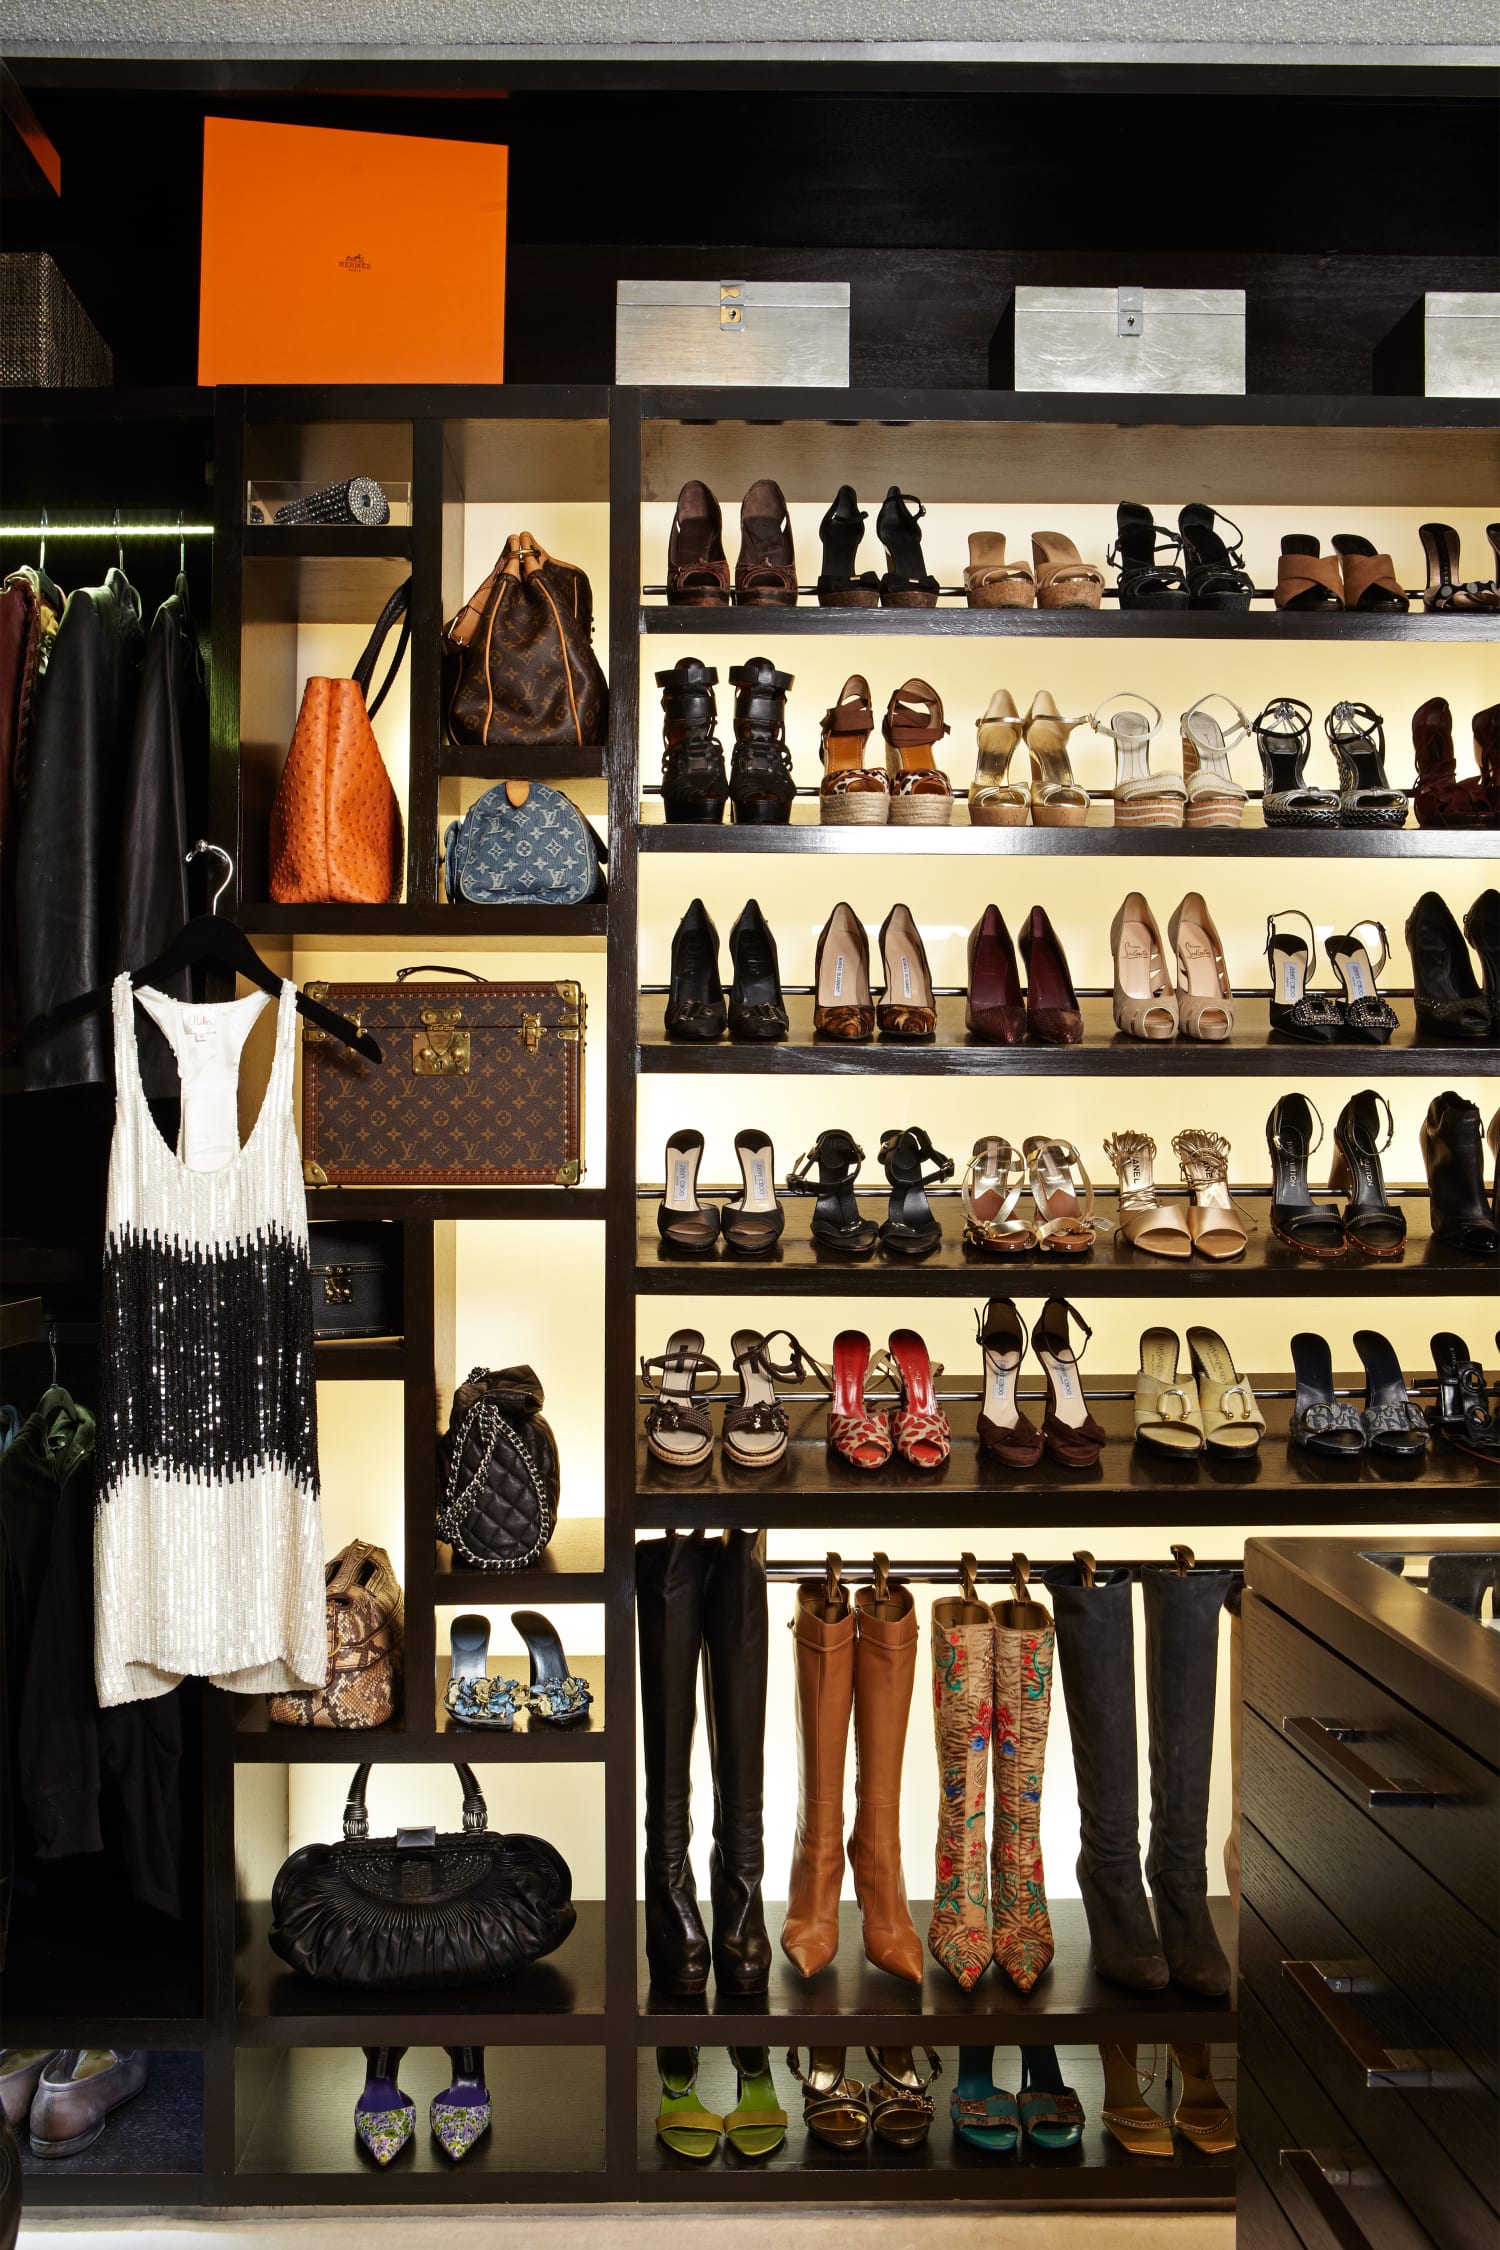 23 Shoe Organization Ideas For a Celebrity Closet Look